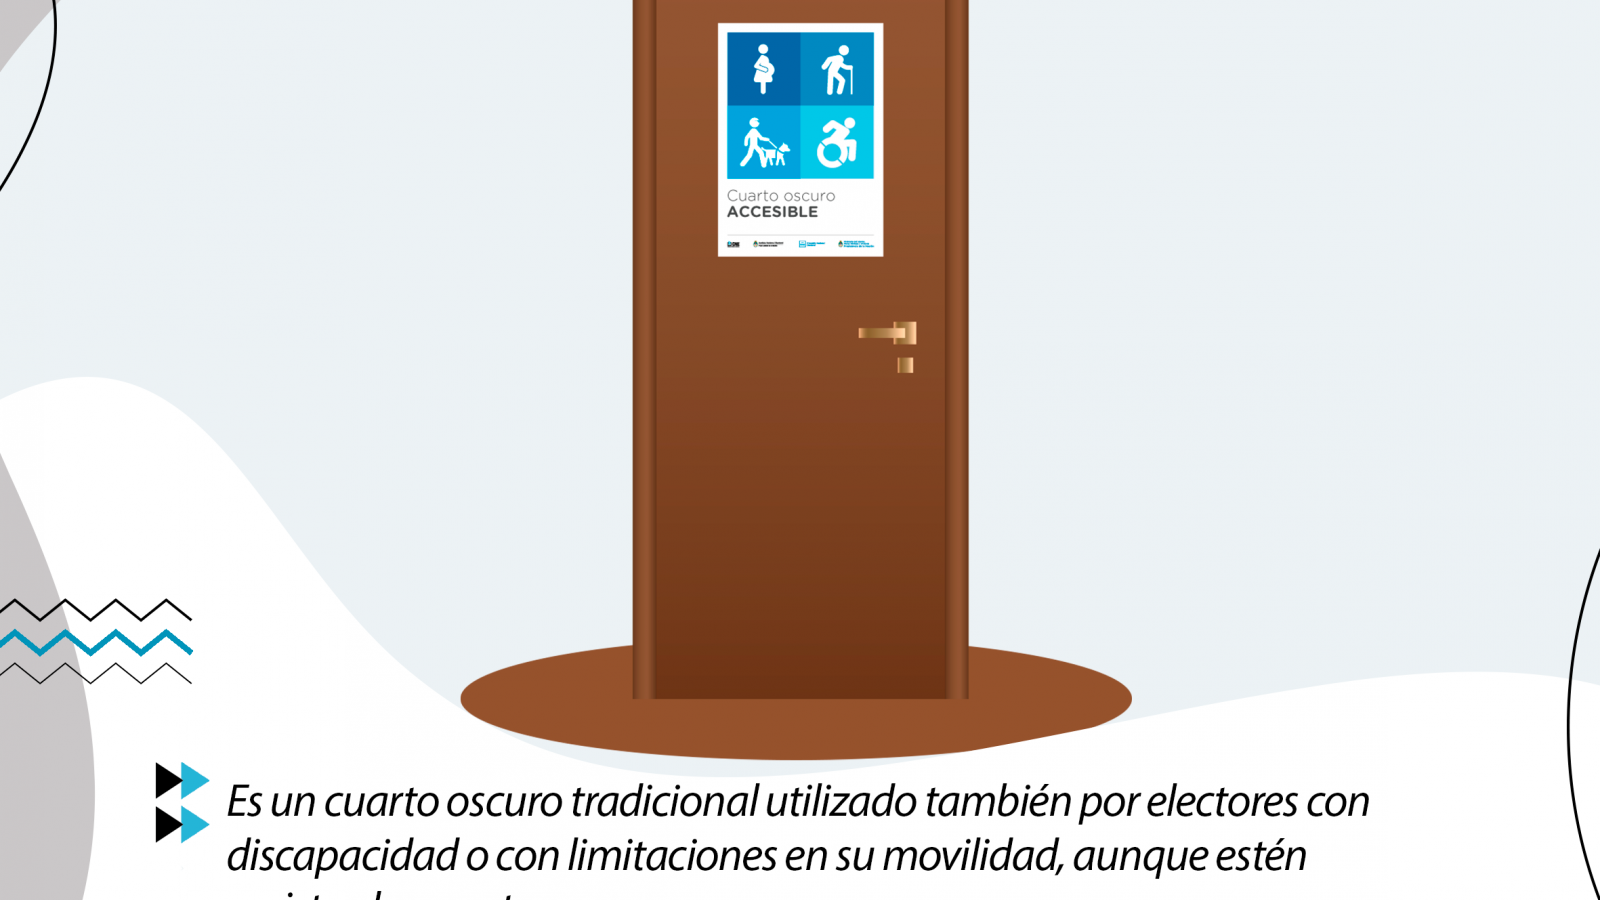 Placa gráfica con información sobre Elecciones Accesibles